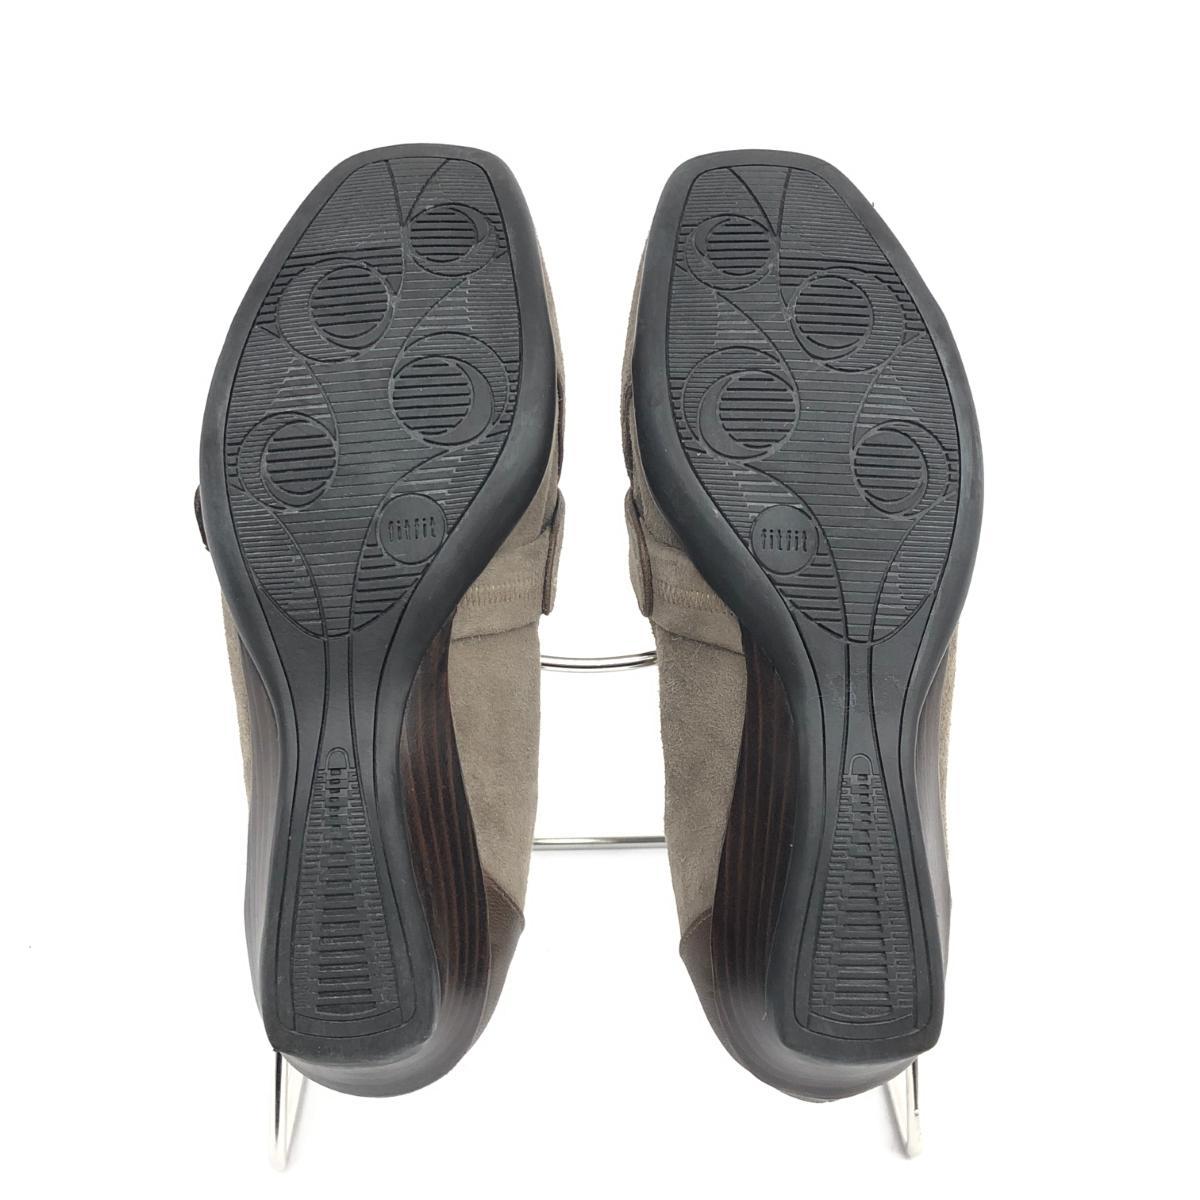  excellent *fitfit Fit Fit shoes 24.0cm* gray ju suede lady's shoes shoes